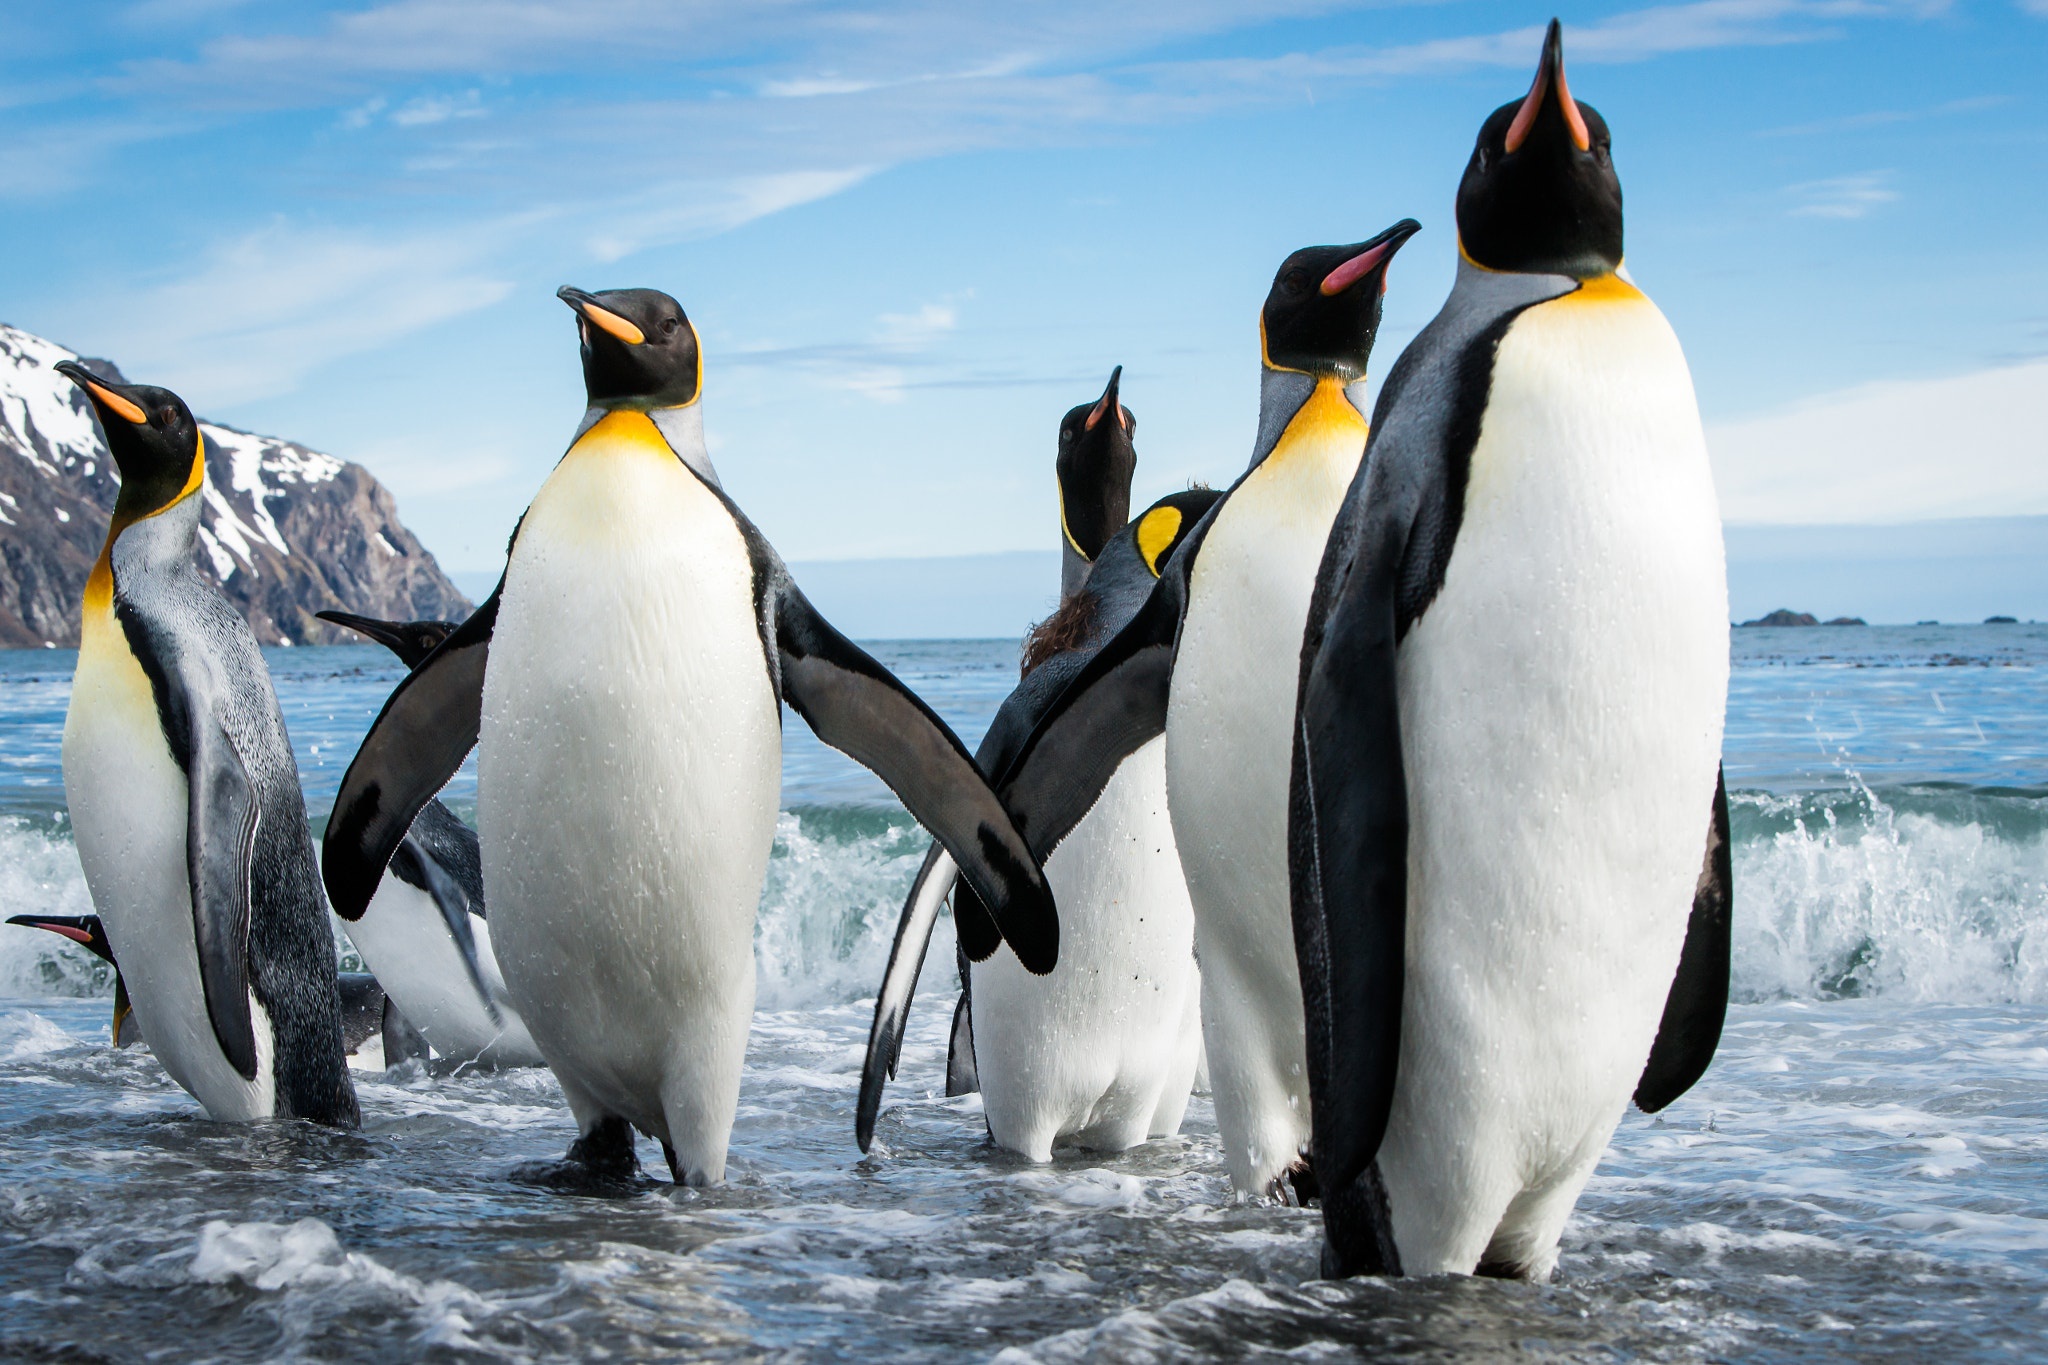 Императорские пингвины живут. Королевский Пингвин в Антарктиде. Пингвины Королевские Императорские. Императорский Пингвин Aptenodytes forsteri. Императорский Пингвин в Антарктиде.